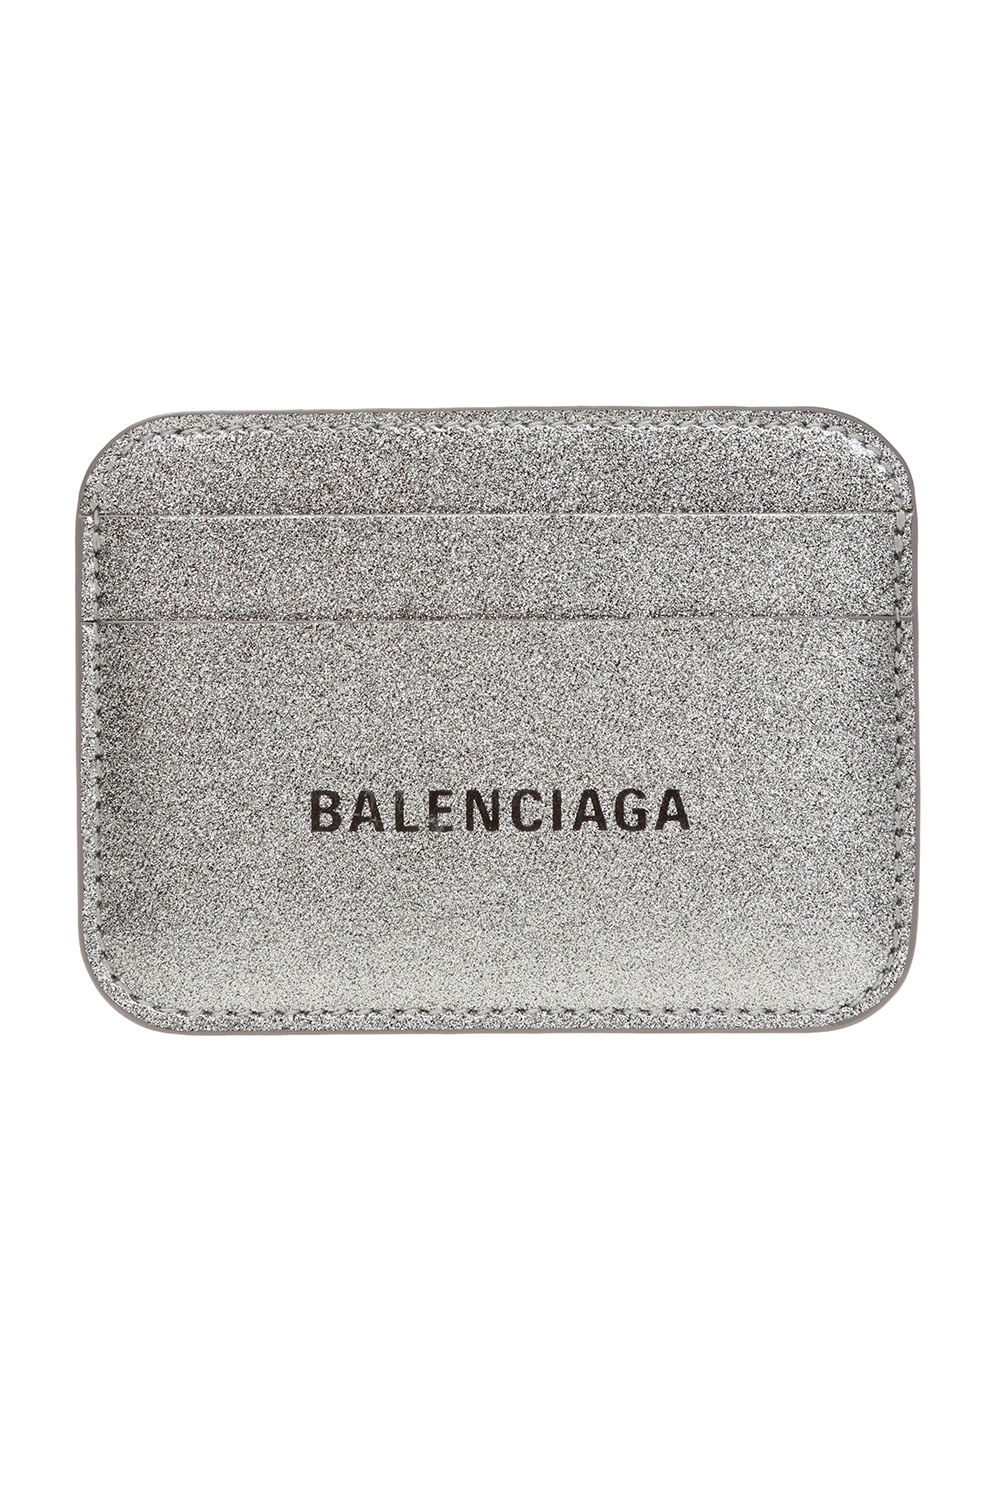 Silver Business card case Balenciaga - Vitkac TW